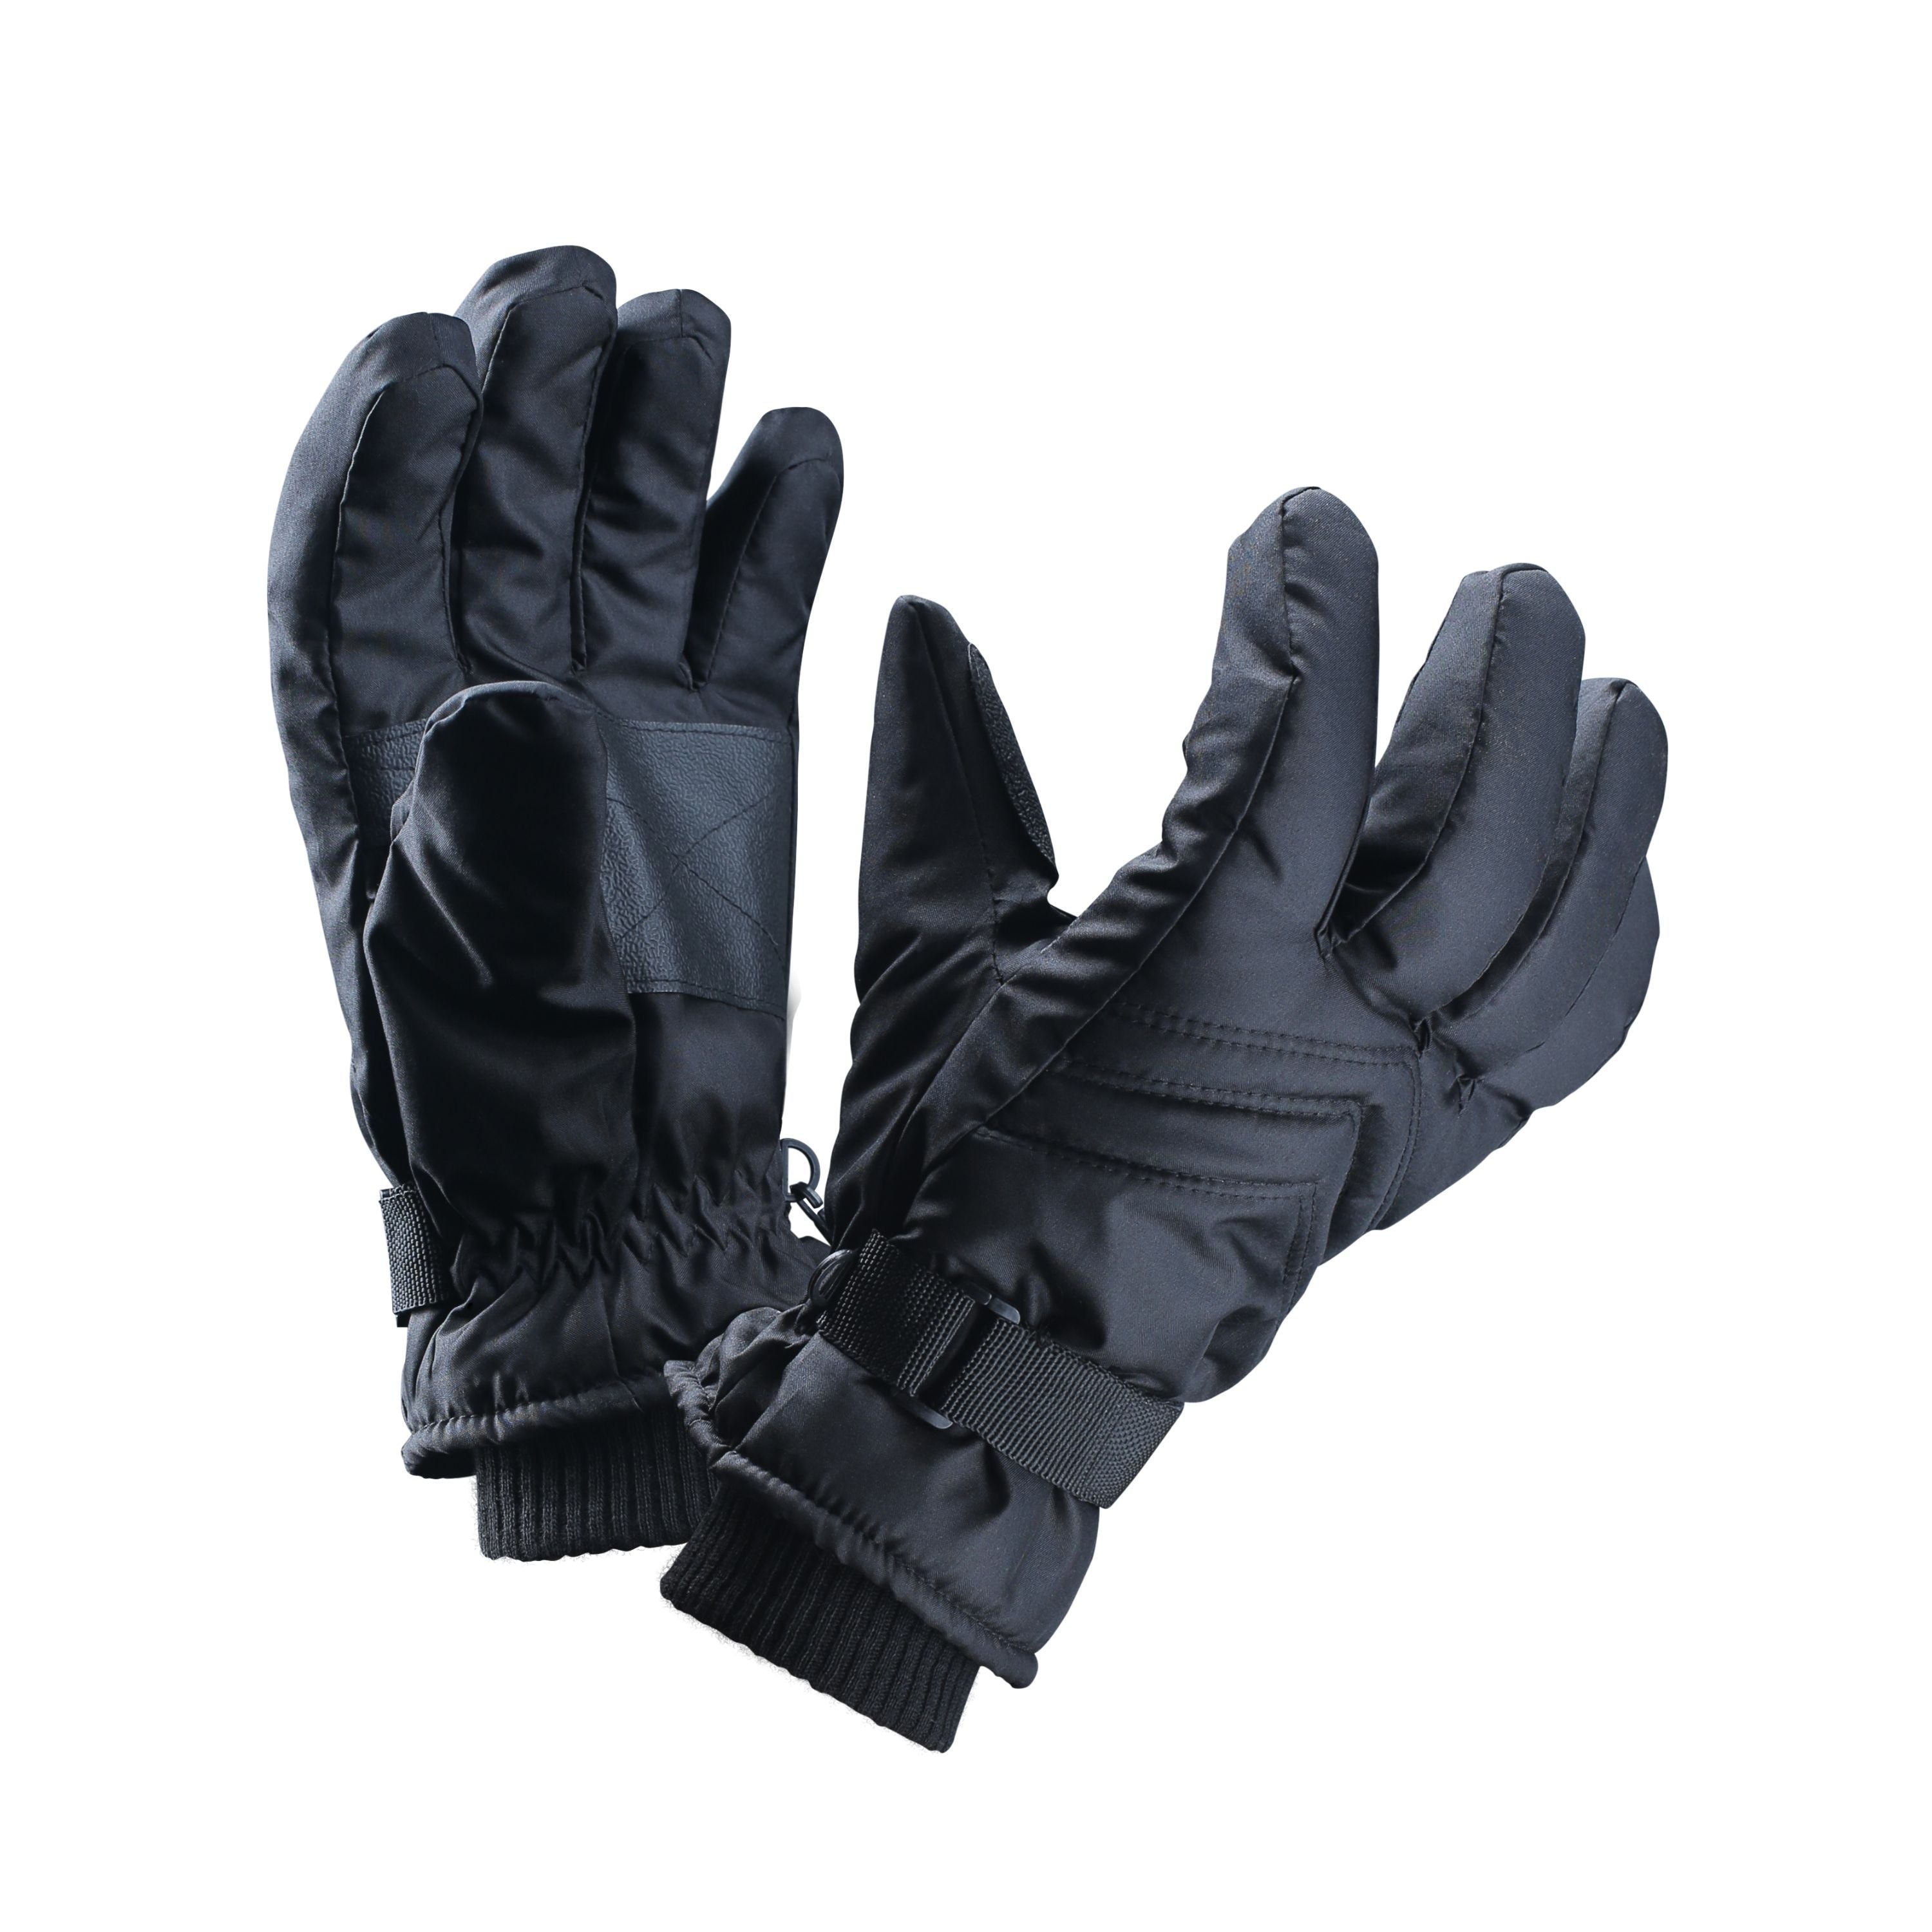 City gloves - Men's